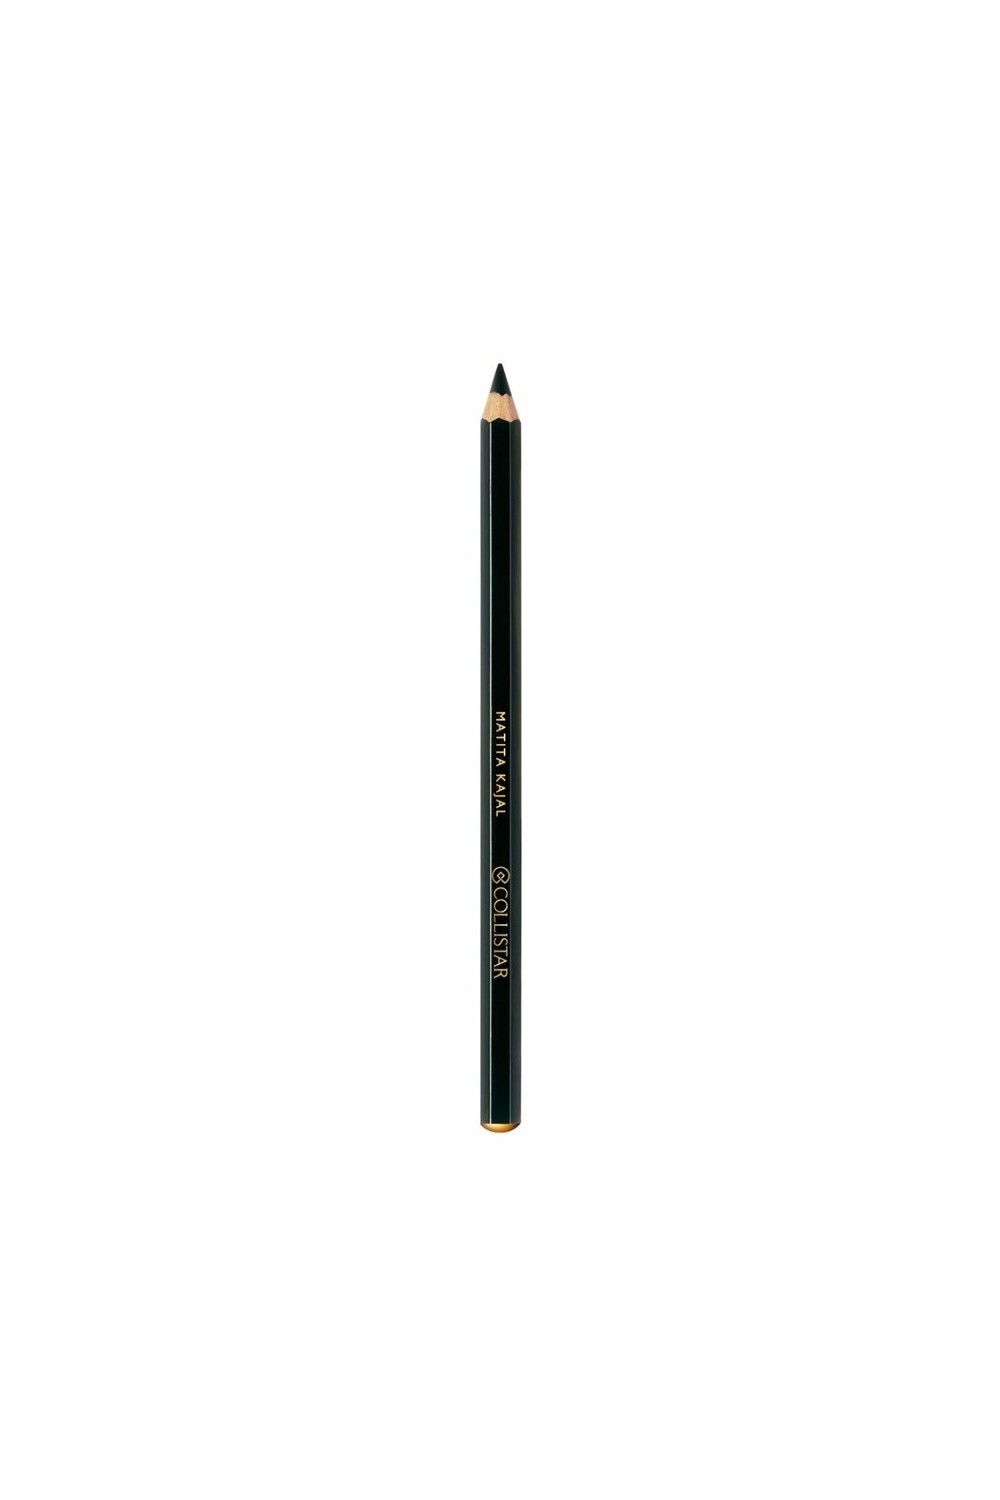 Collistar Kajal Eye Pencil Black 1,2g